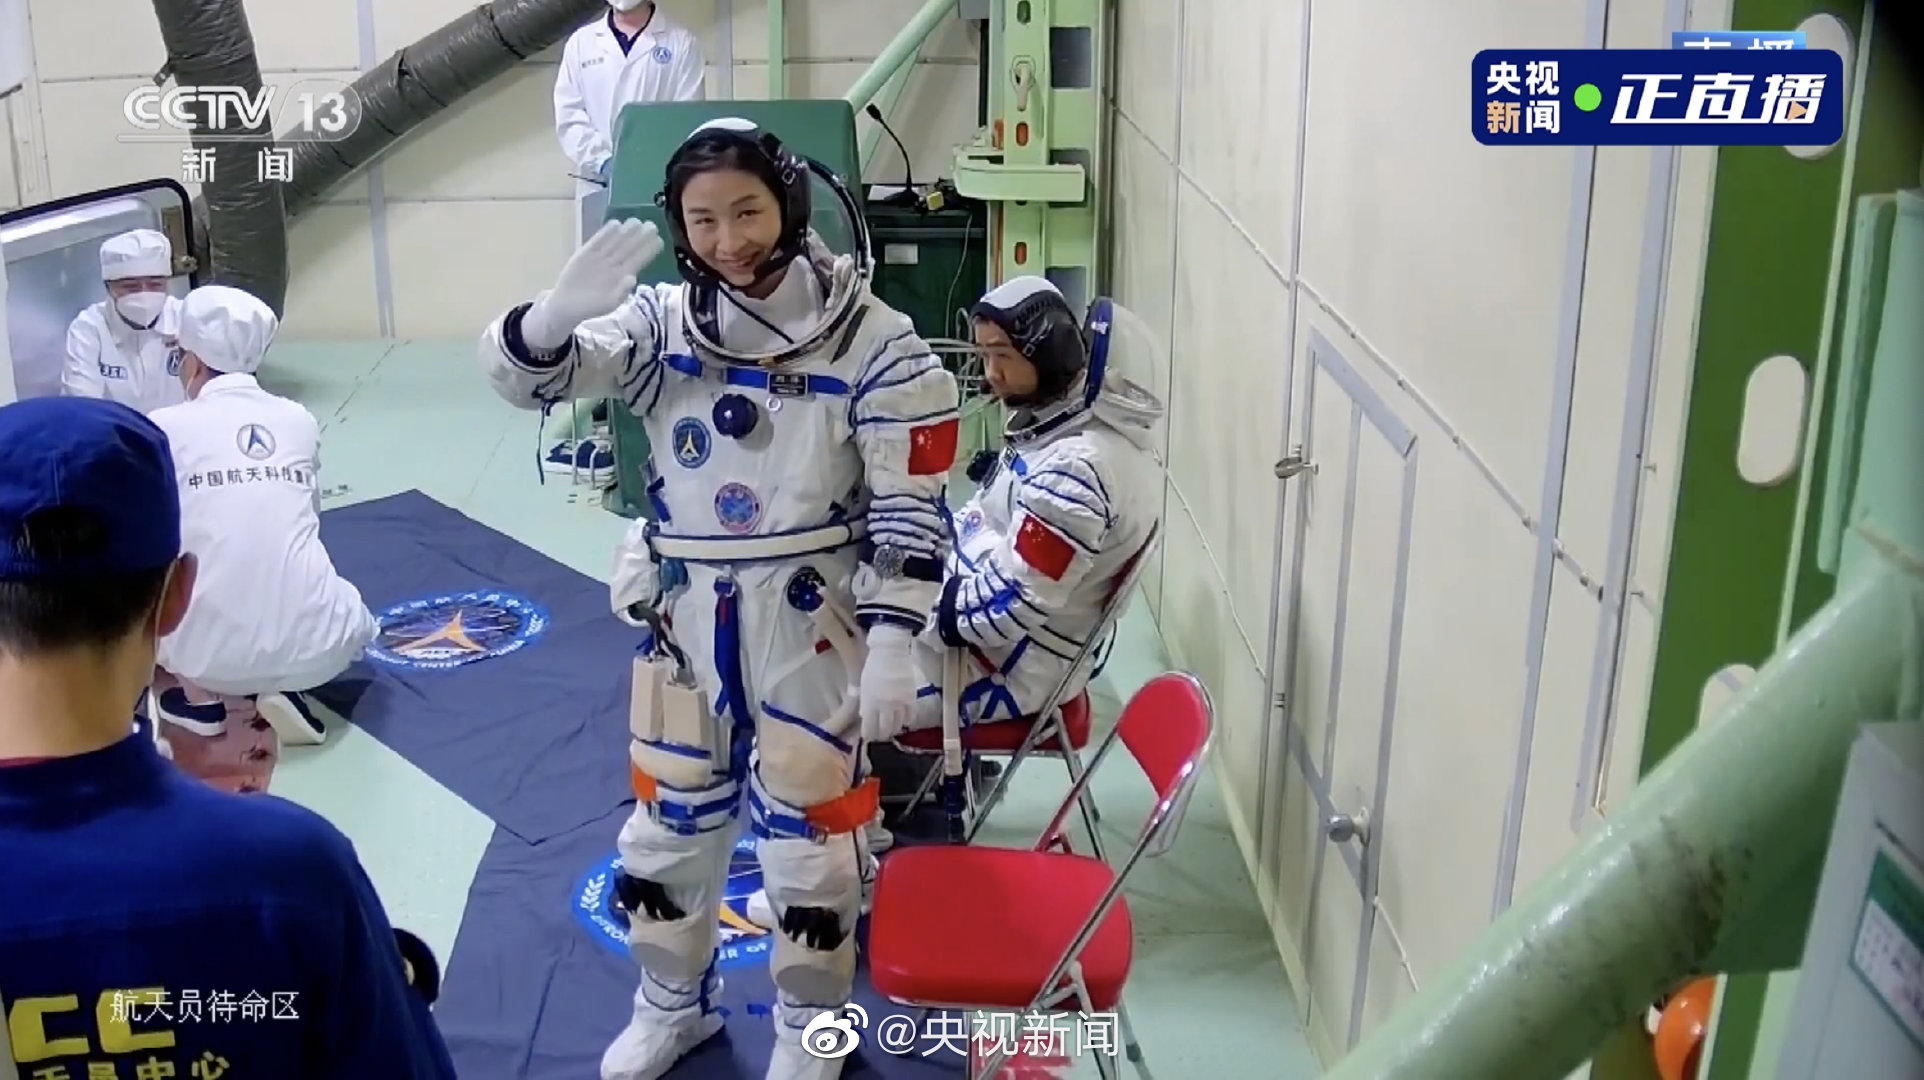 【人物】女航天员刘洋讲述自己的故事